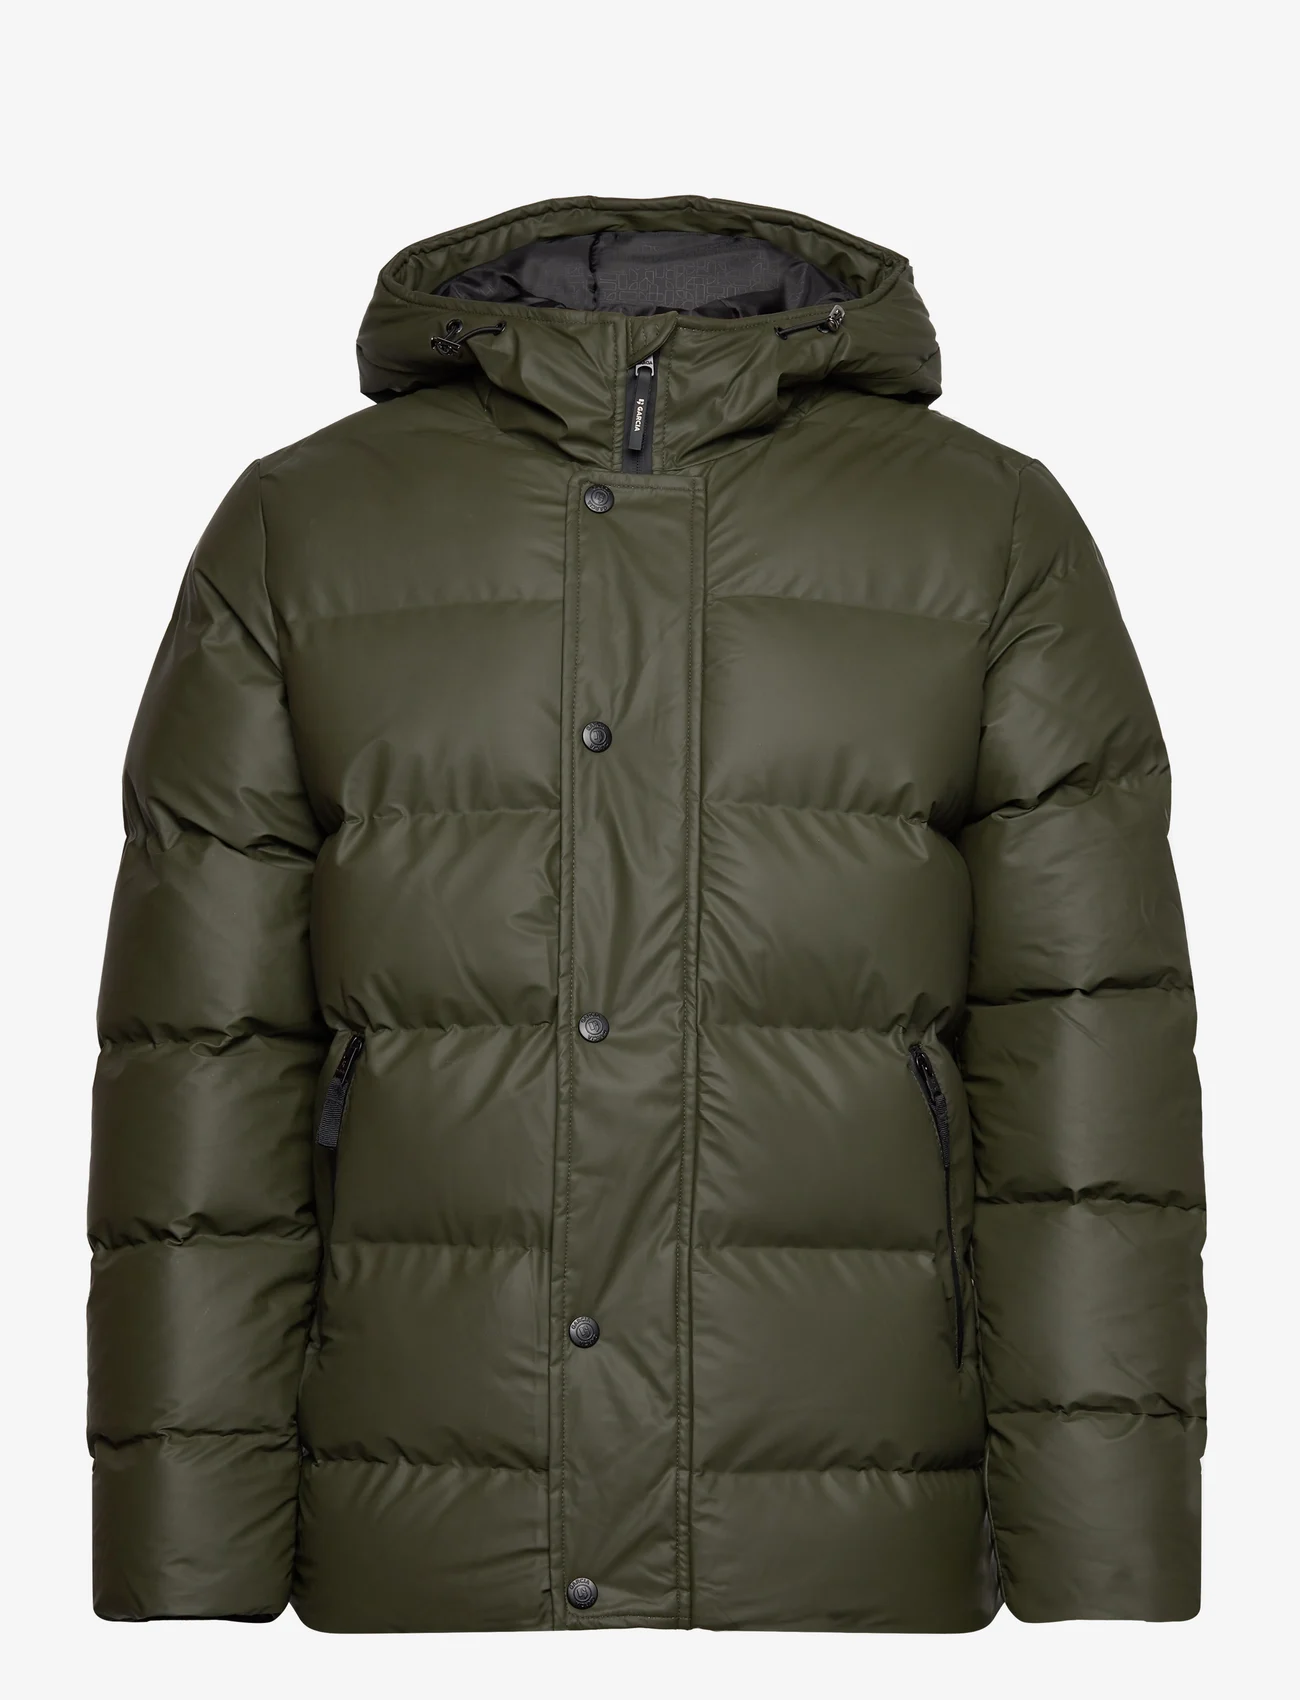 Garcia - men`s outdoor jacket - vinterjackor - green - 0